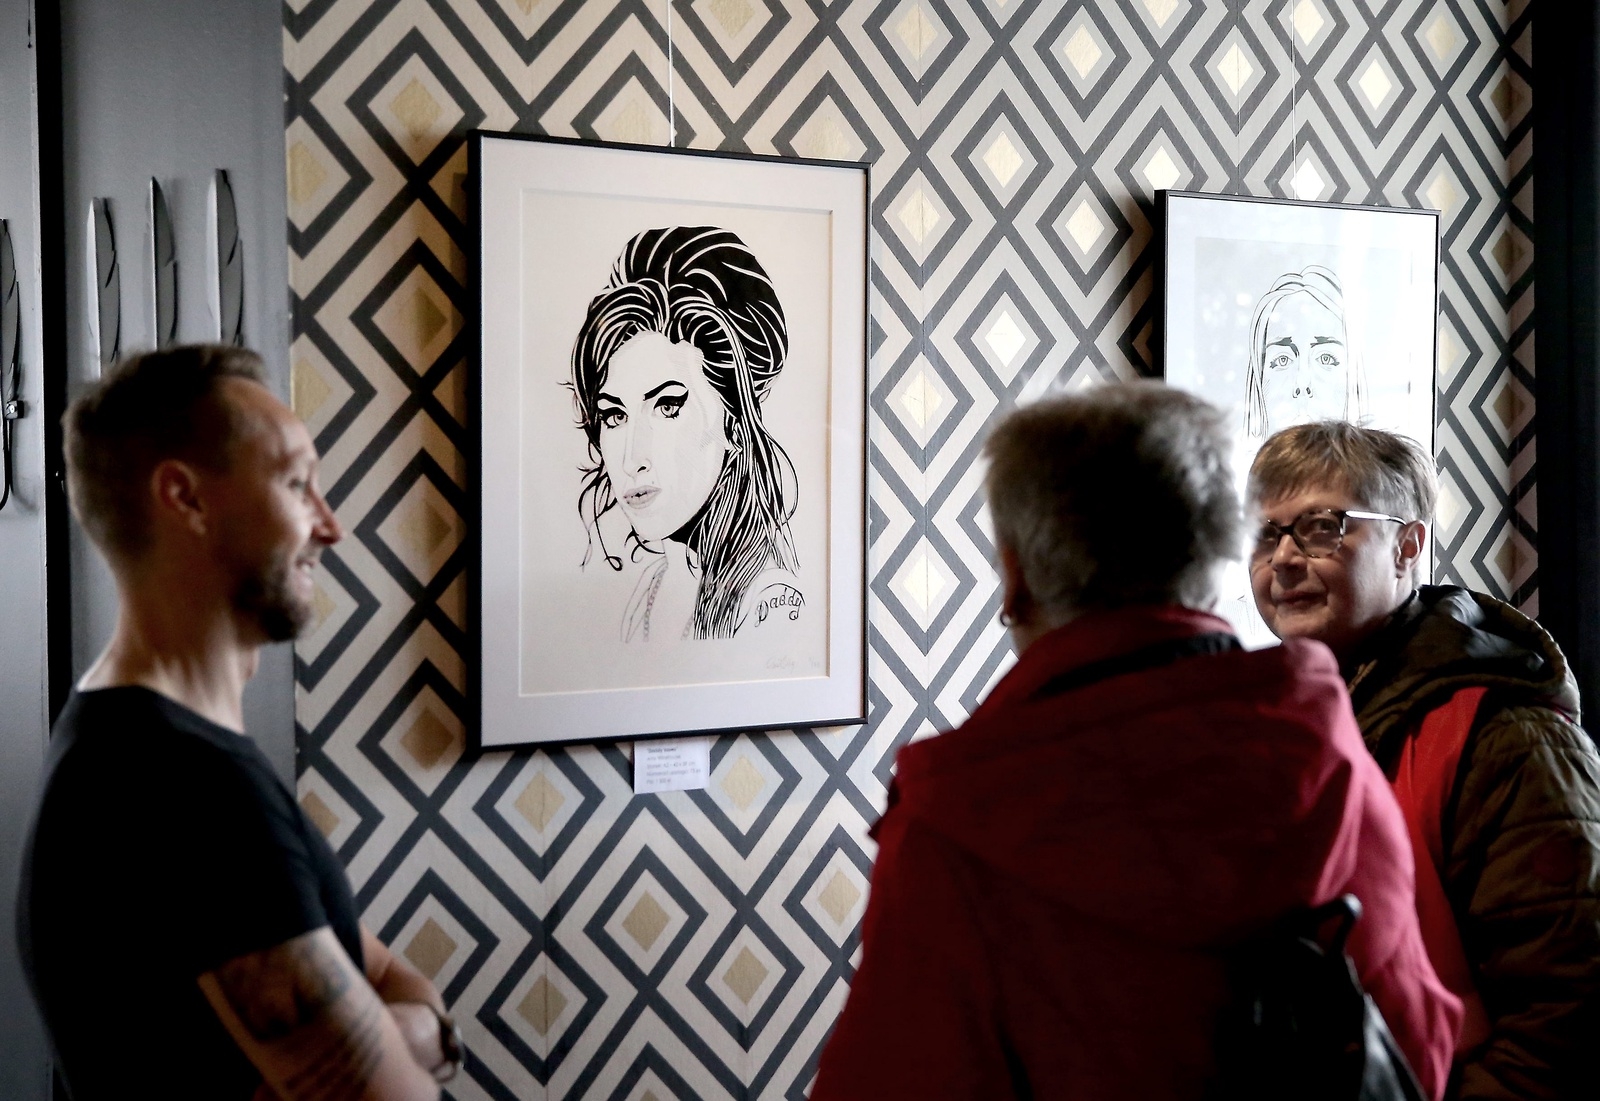 Paul Tilly i samspråk med Britt Olofsson och Iréne Sohl. I bakgrunden, artisten Amy Winehouse. FOTO: STEFAN SANDSTRÖM.